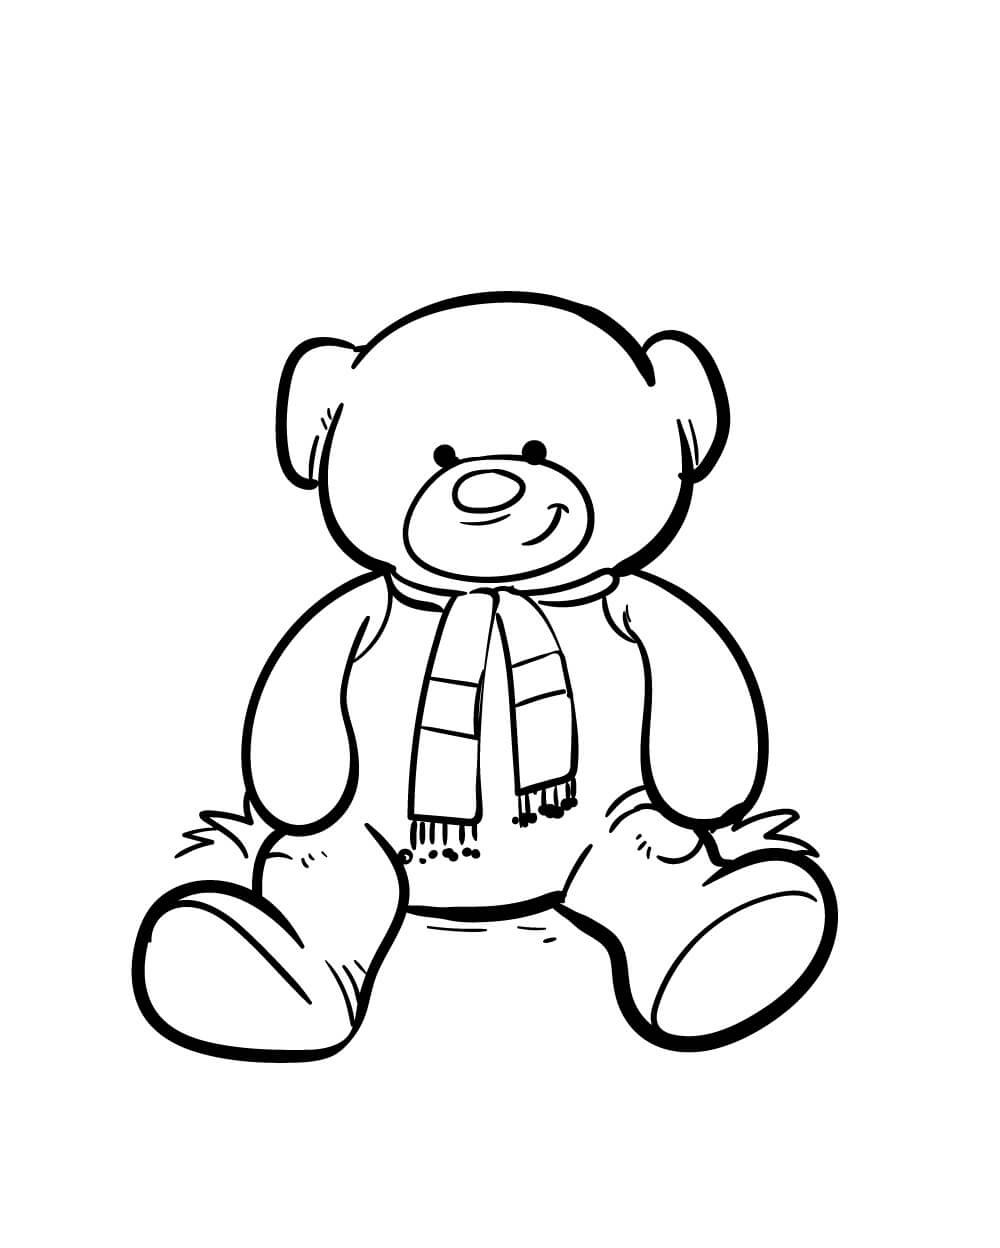 Desenhando Urso de Pelúcia para colorir